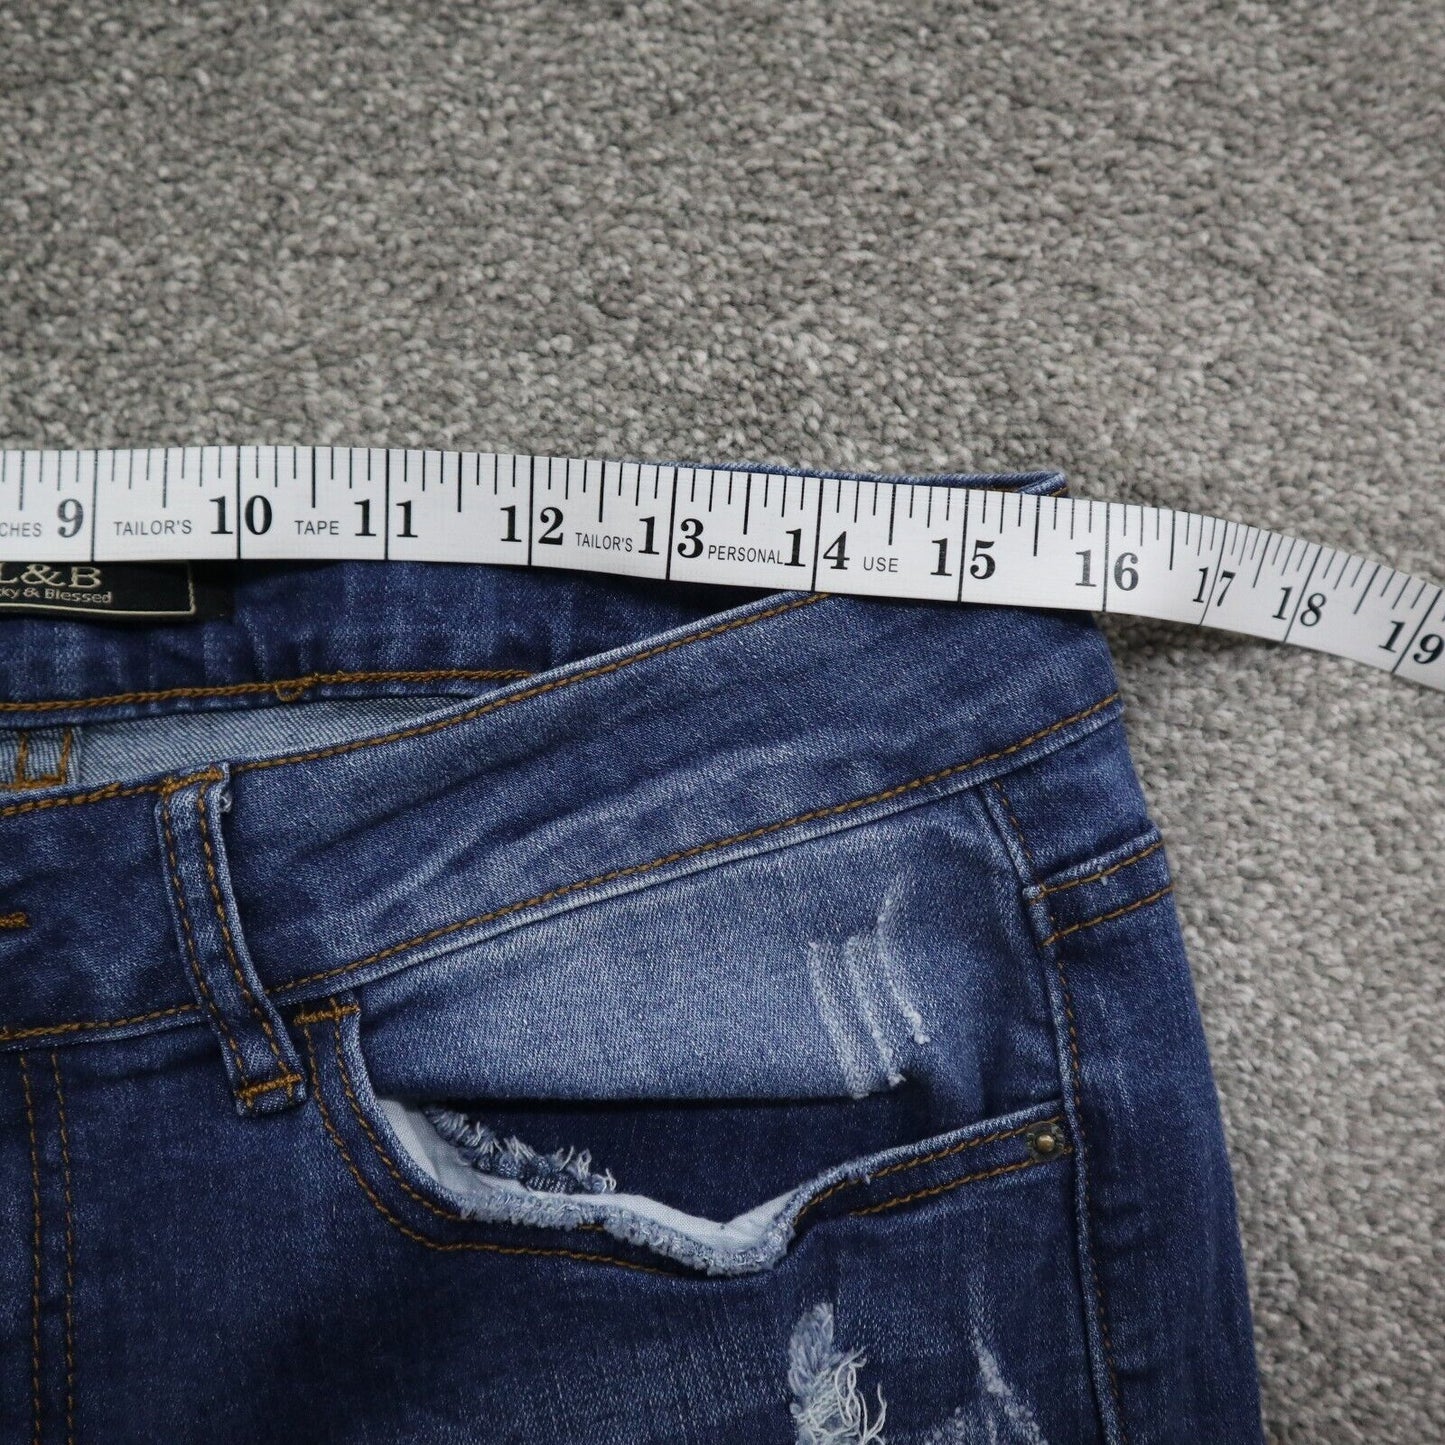 L&B Womens Distressed Jeans Slim Fit Denim High Rise Light Blue Size W32